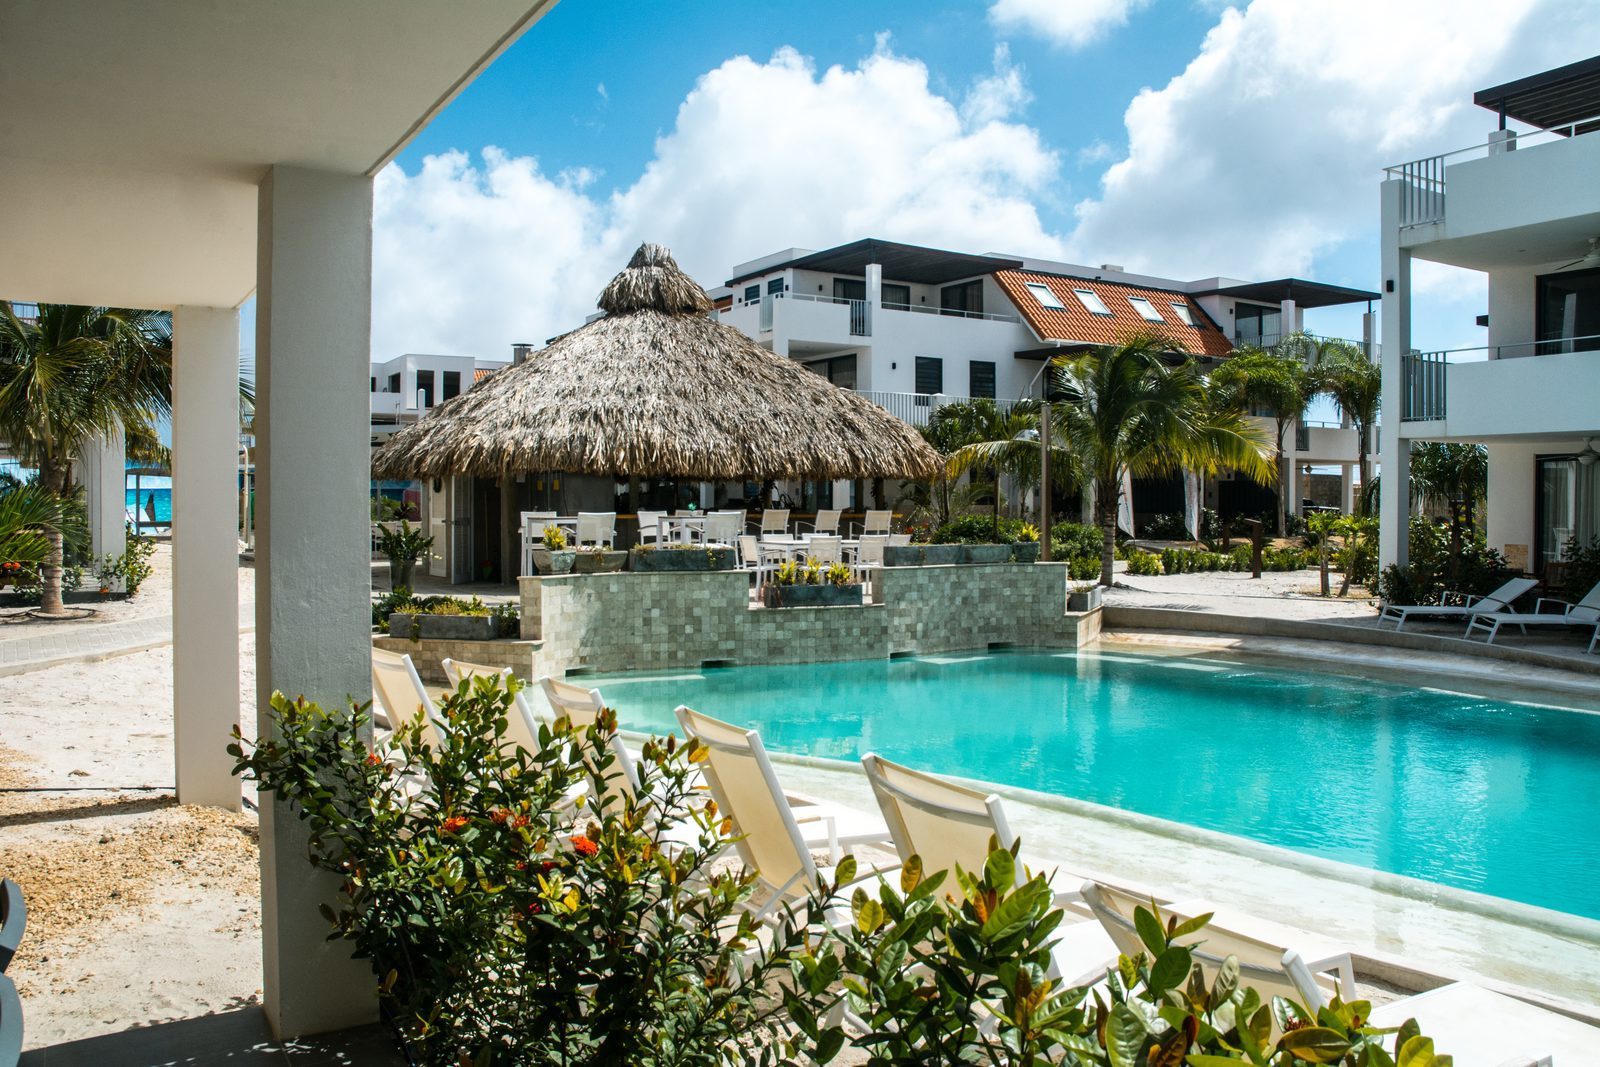 Zoekt u een resort op Bonaire? Resort Bonaire beschikt over een prachtig zwembad en zeer luxe appartementen.